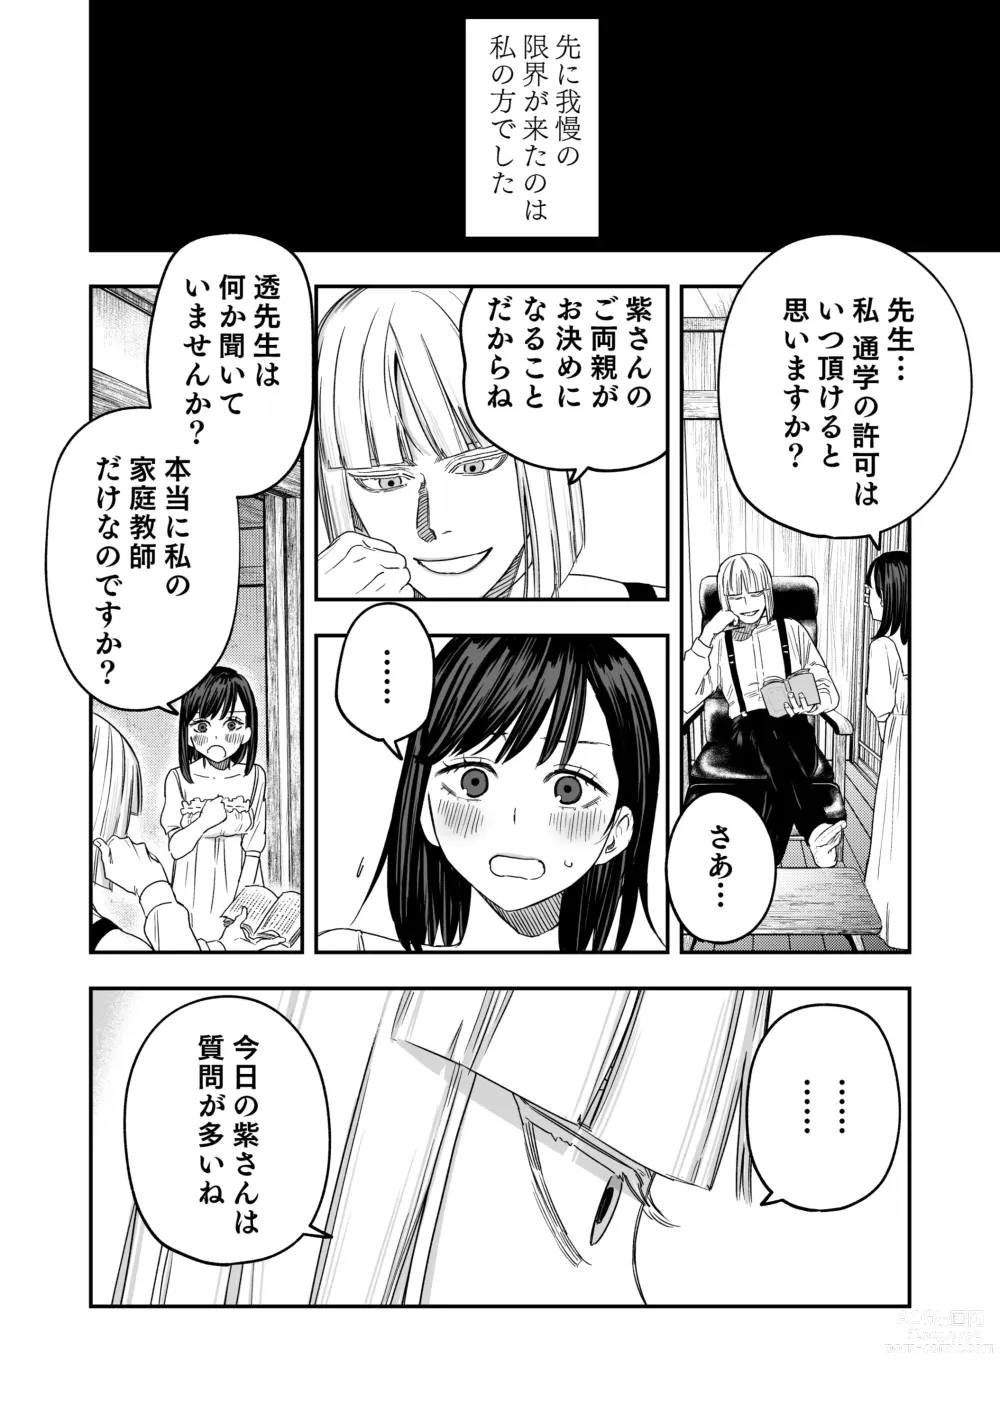 Page 9 of doujinshi Hachiroku Sou - Ieori to Hana Katajikena no Yome